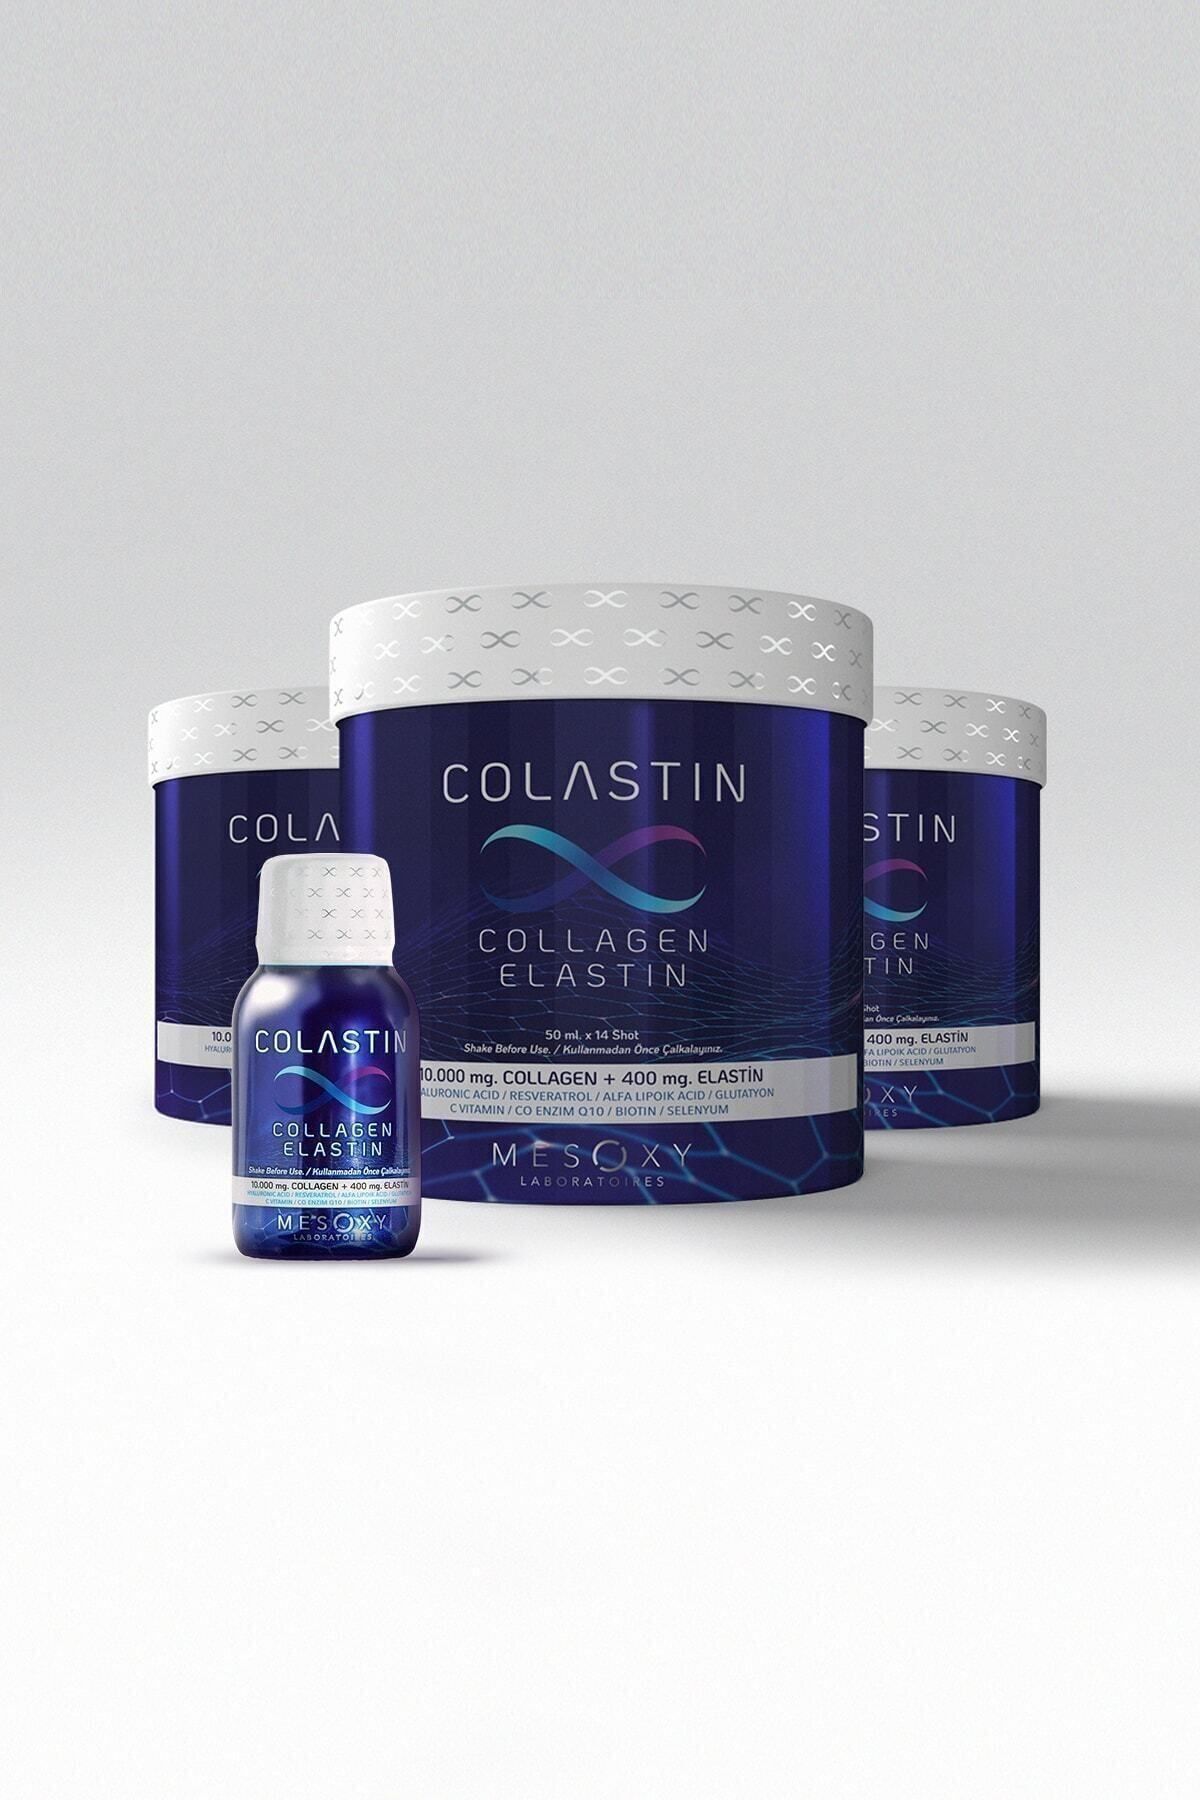 Colastin Collagen Elastin 50 Ml X 14 Shot 3 Adet